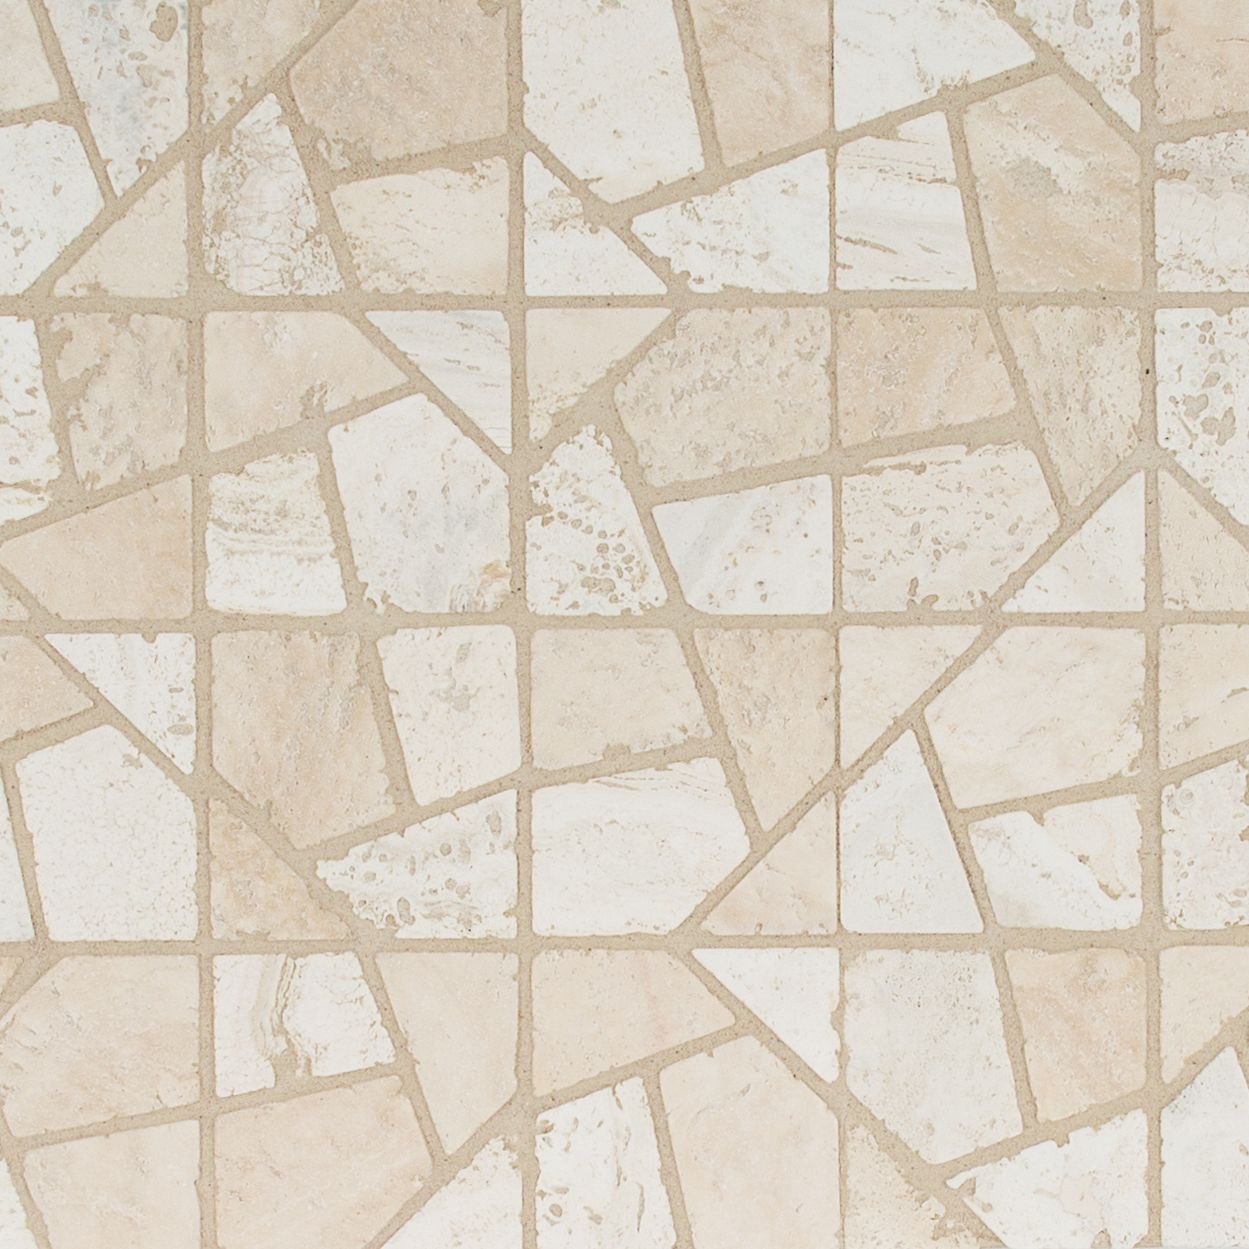 Terrain Mosaic 12.375" x 12.375"